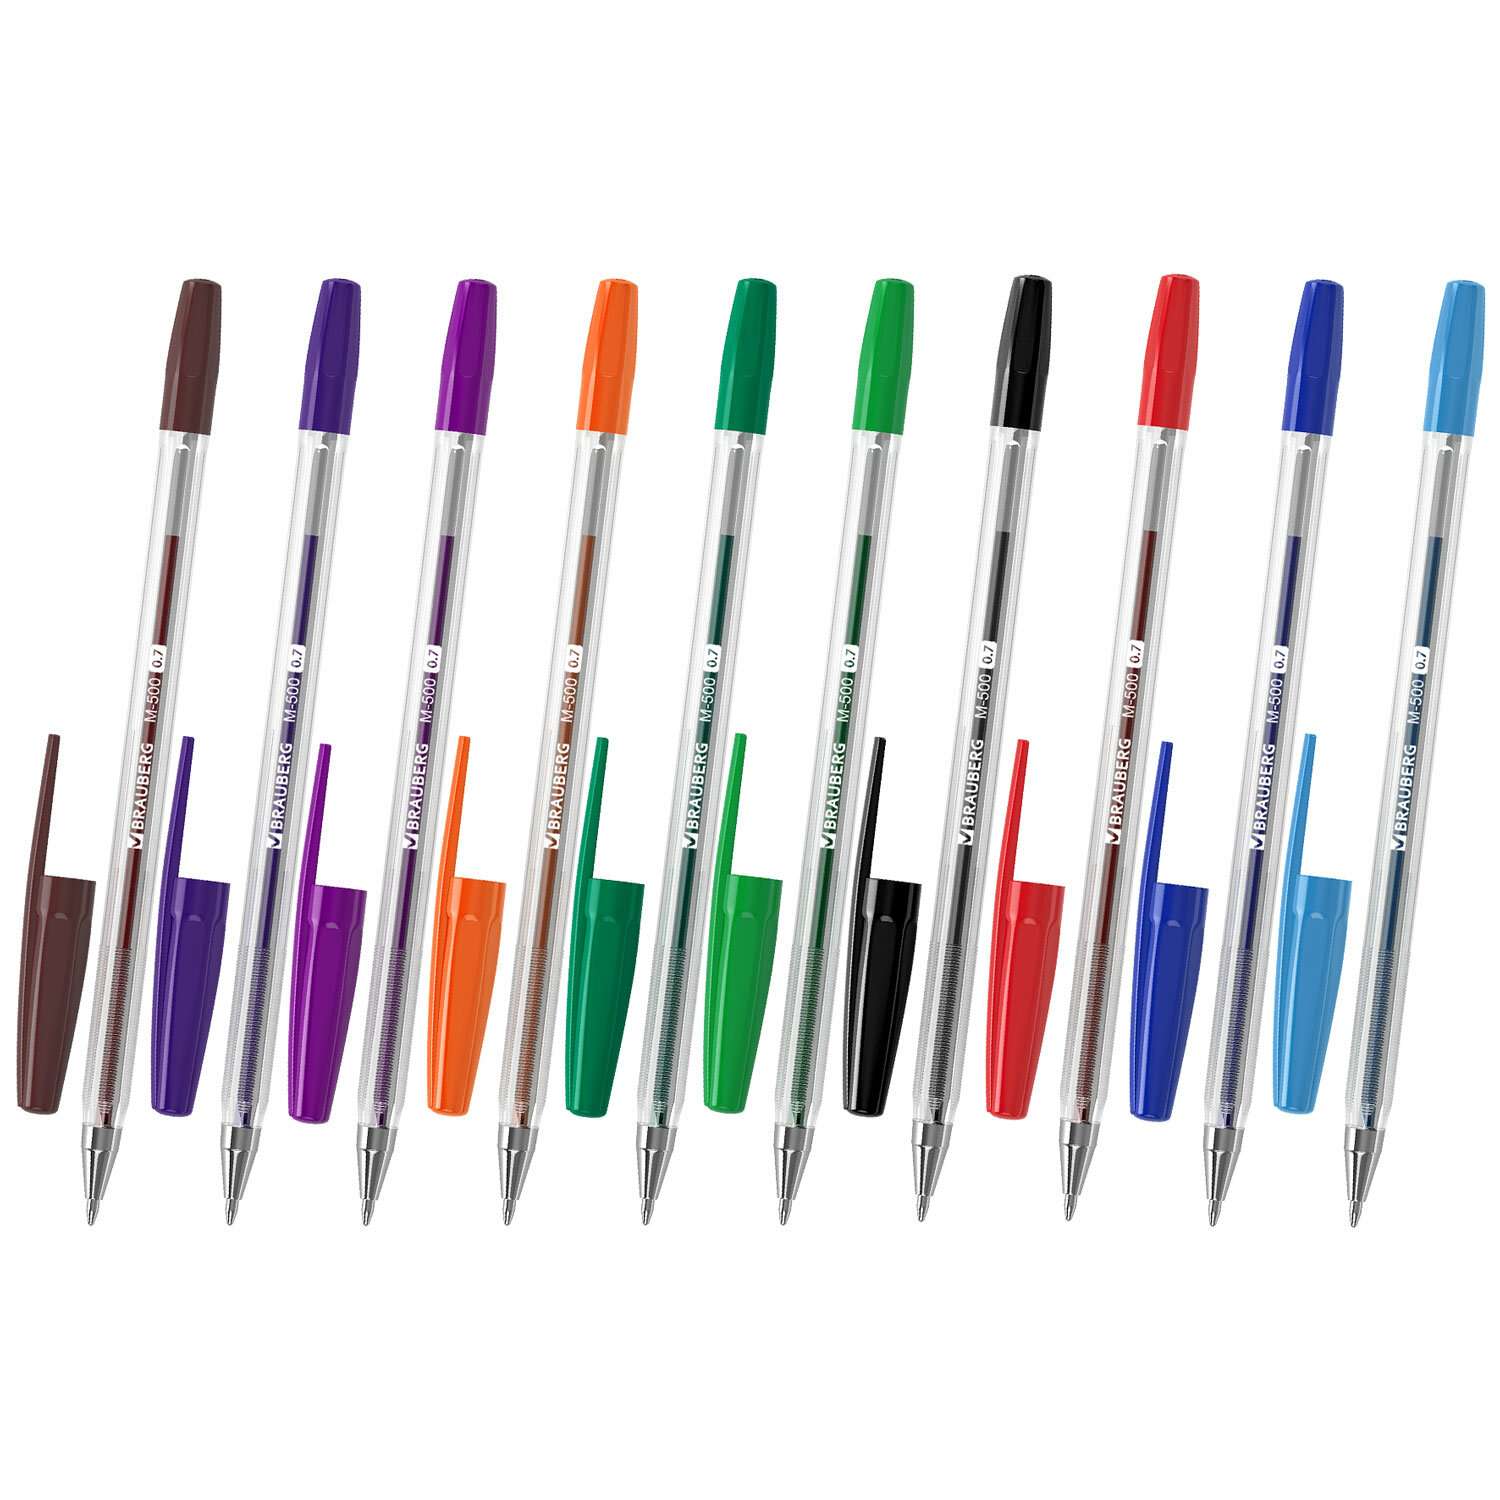 Ручки шариковые Brauberg цветные набор 10 штук тонкие для школы - фото 7